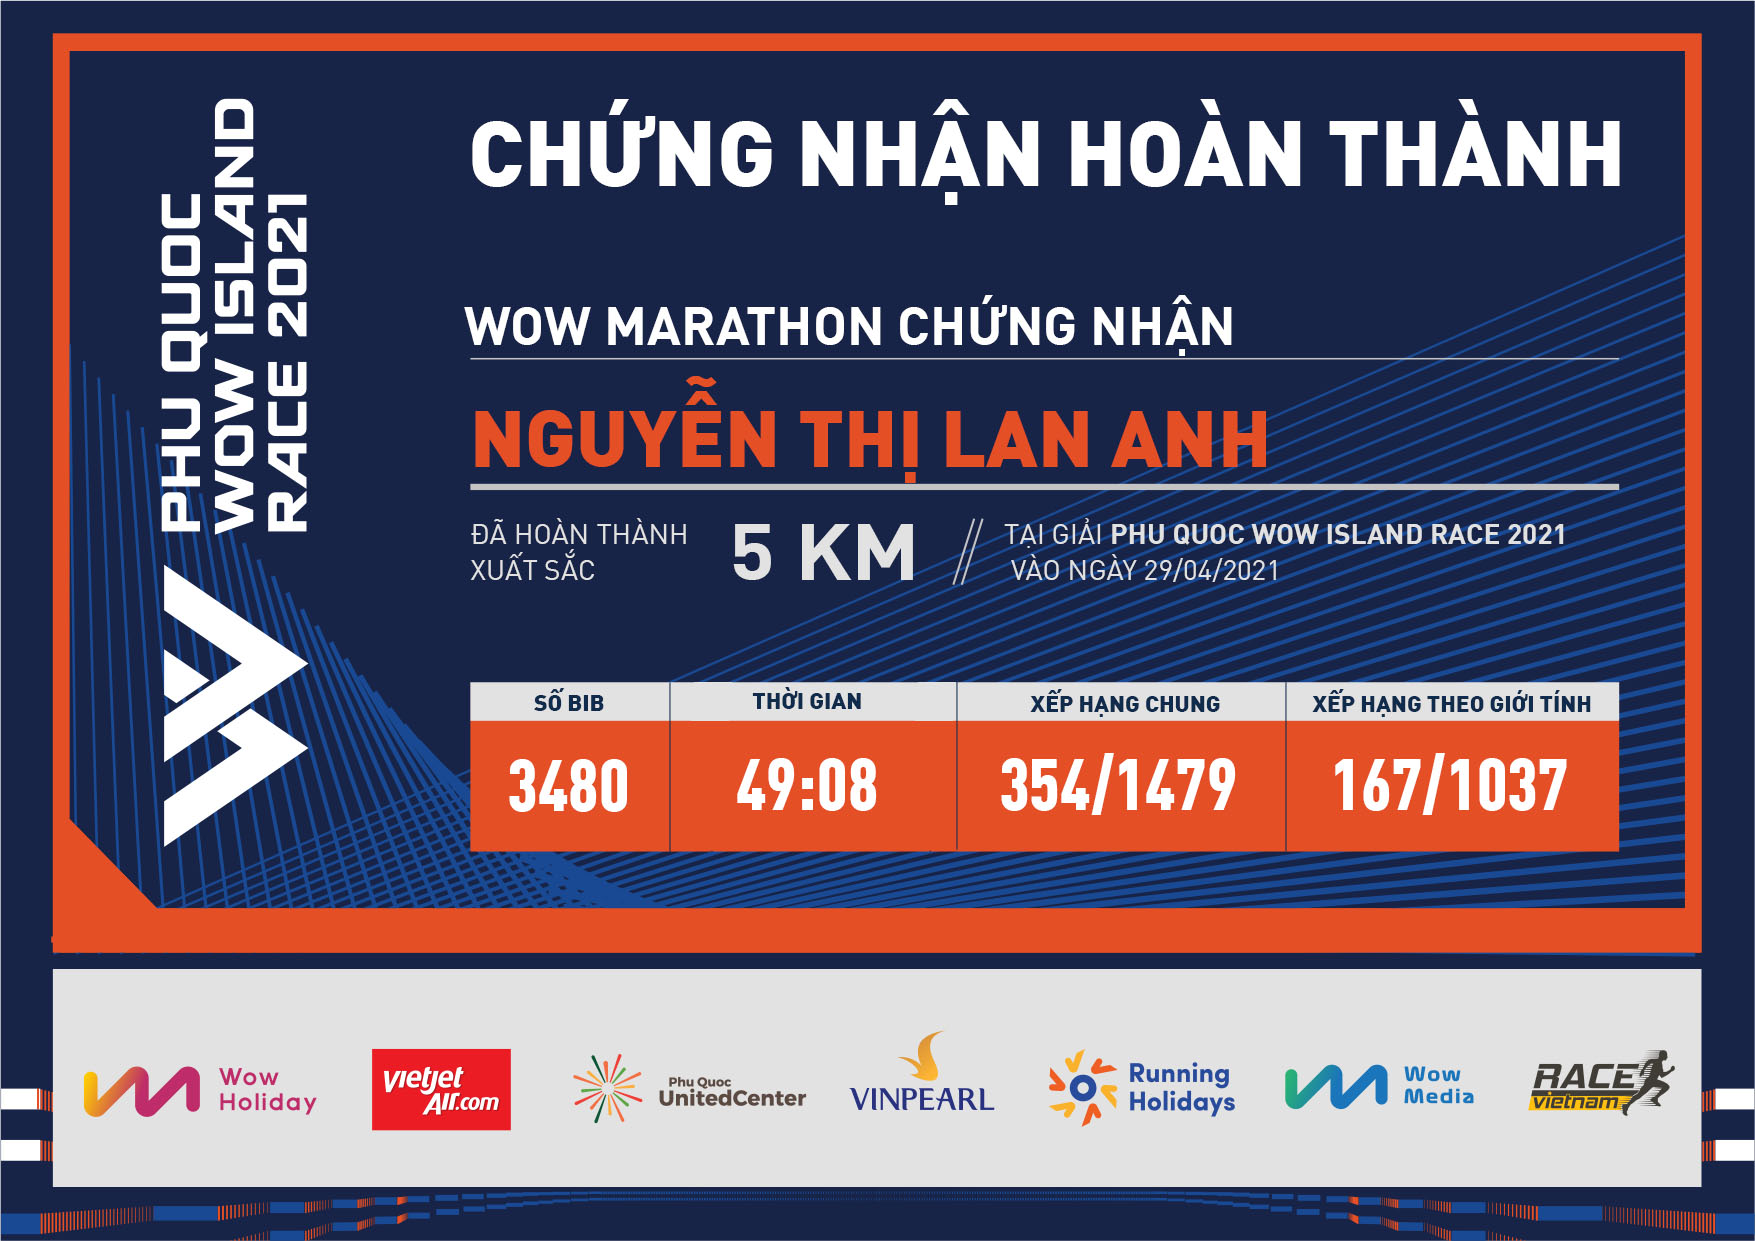 3480 - Nguyễn Thị Lan Anh